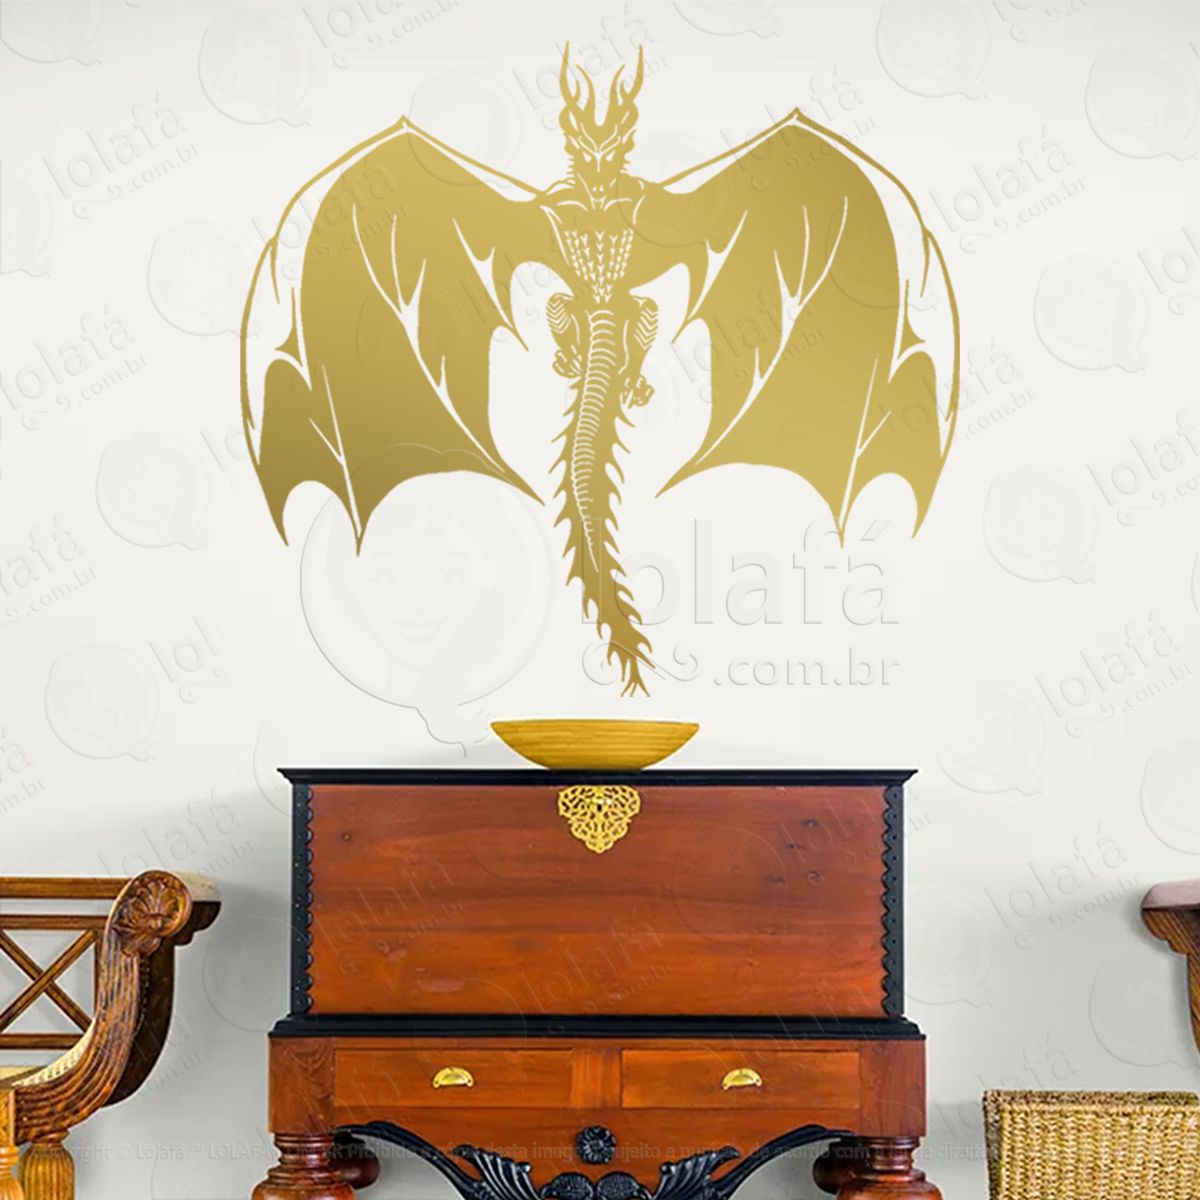 dragão altar draconiano witch dragon adesivo de parede decorativo para casa, sala, quarto, vidro e altar ocultista - mod:321